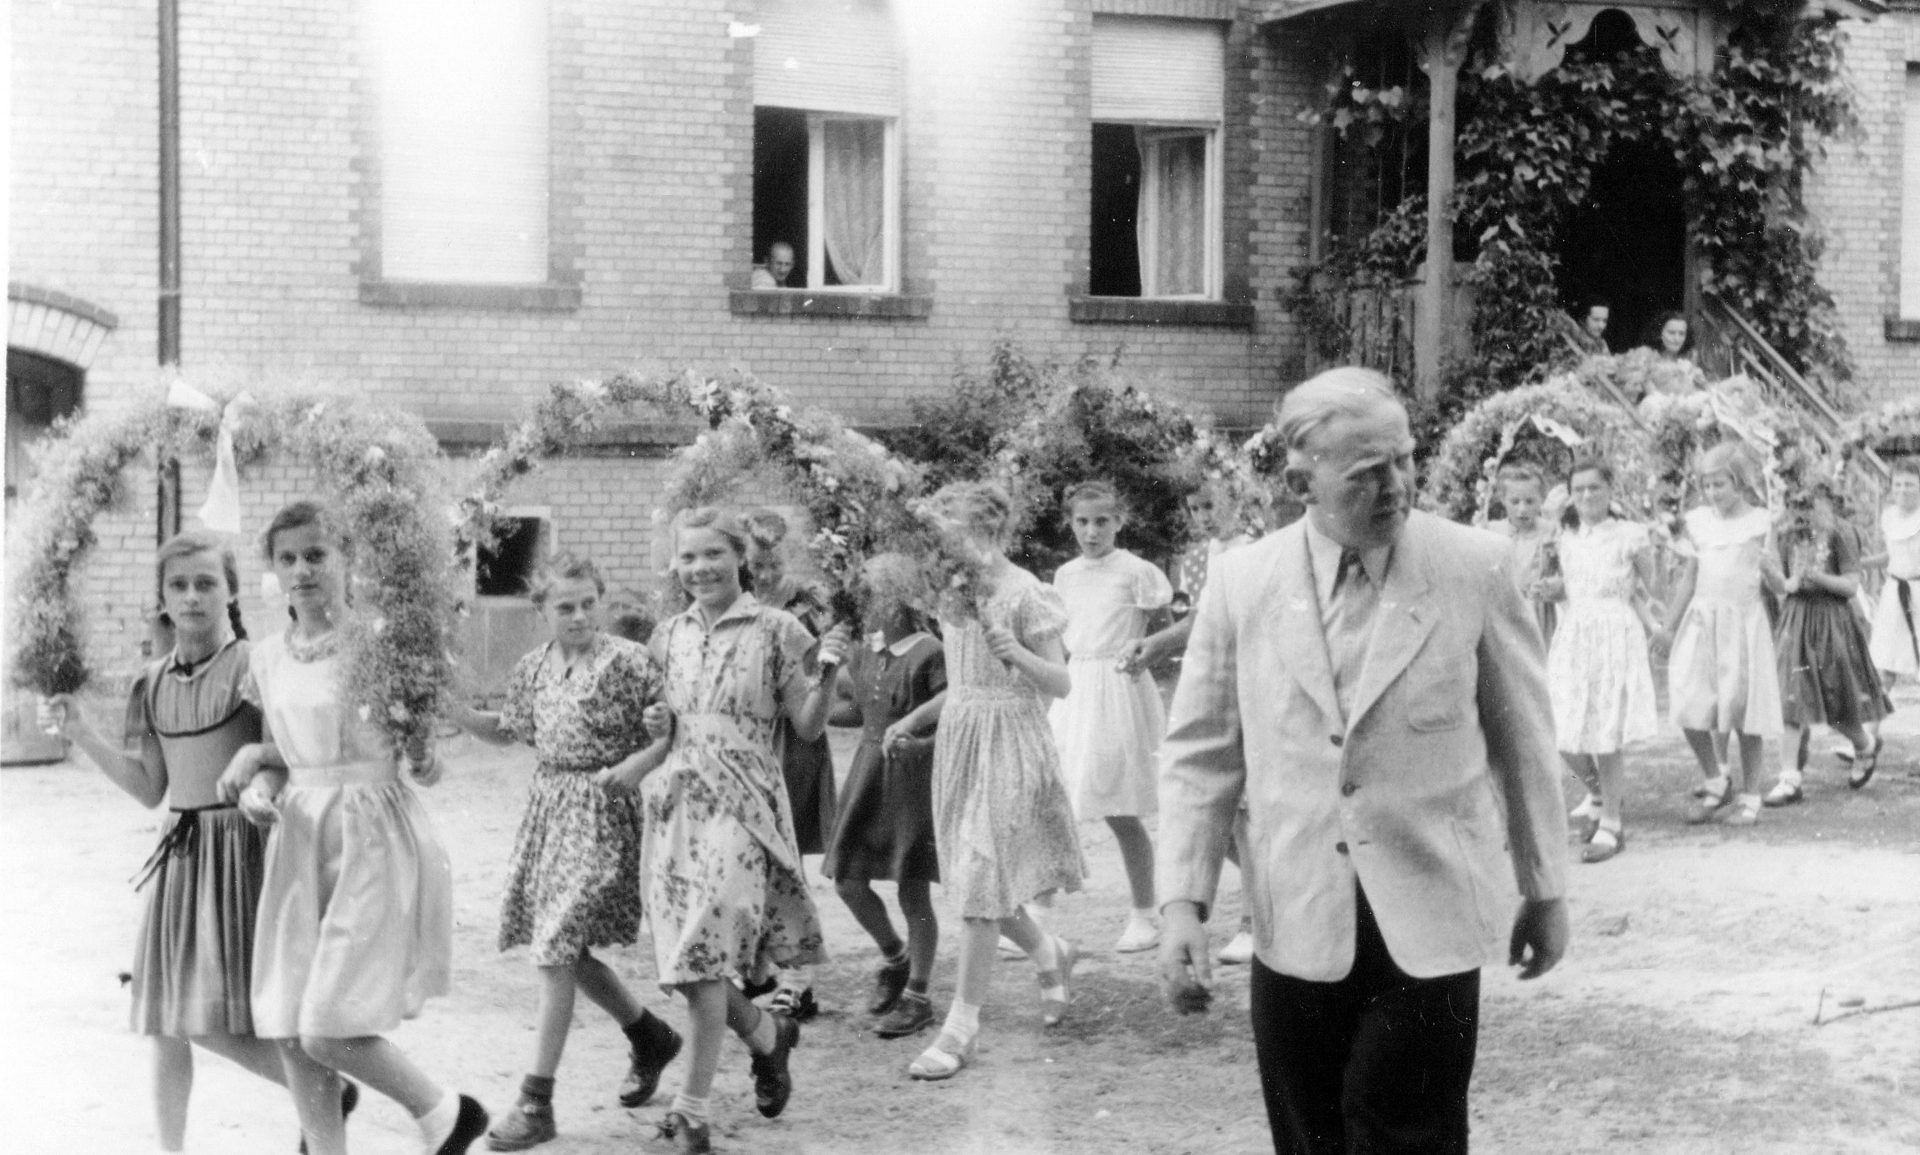 Schulfestumzug 1950er/1960er Jahre